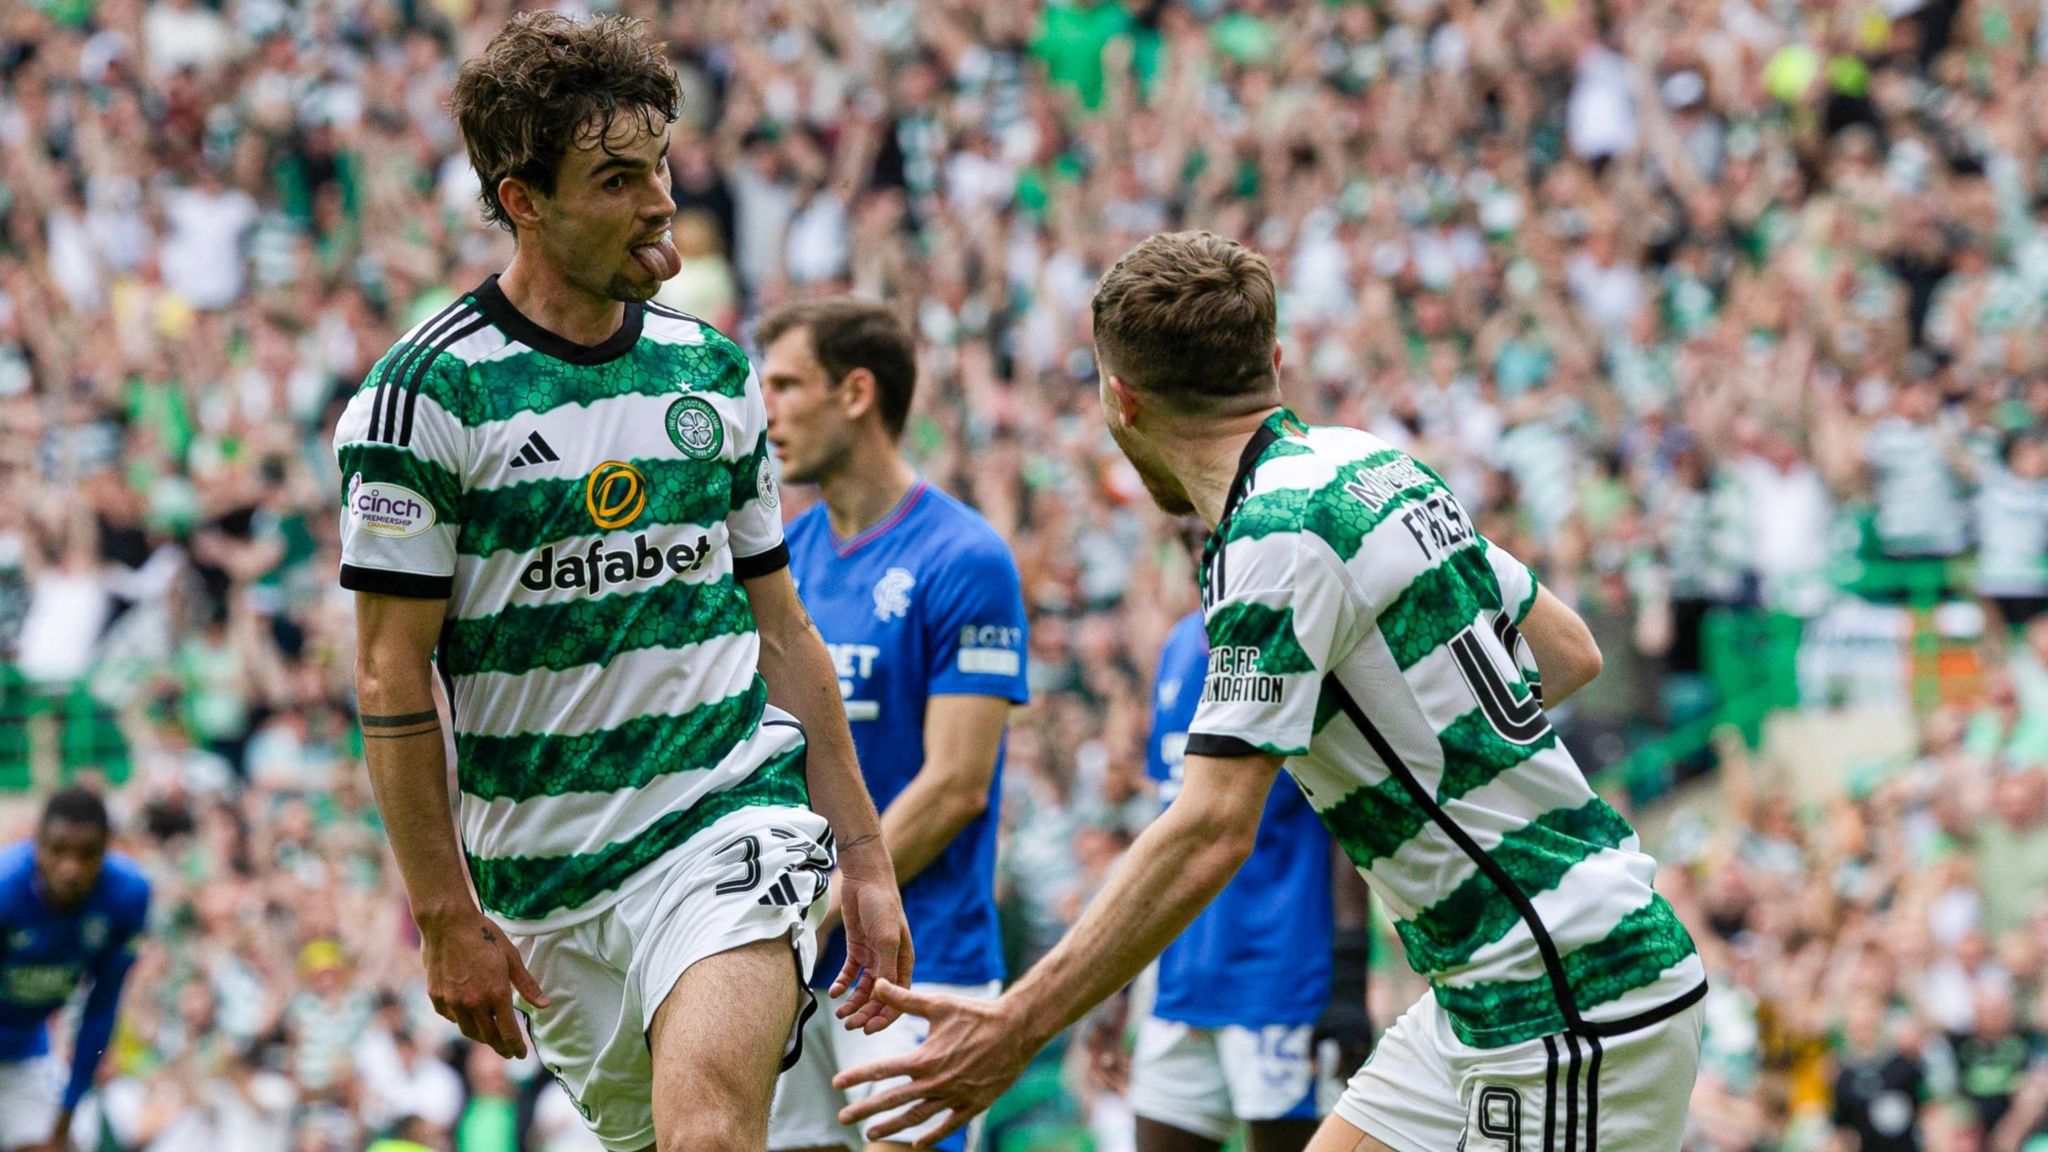 Celtic Raih Kemenangan Dramatis di Final Piala Skotlandia